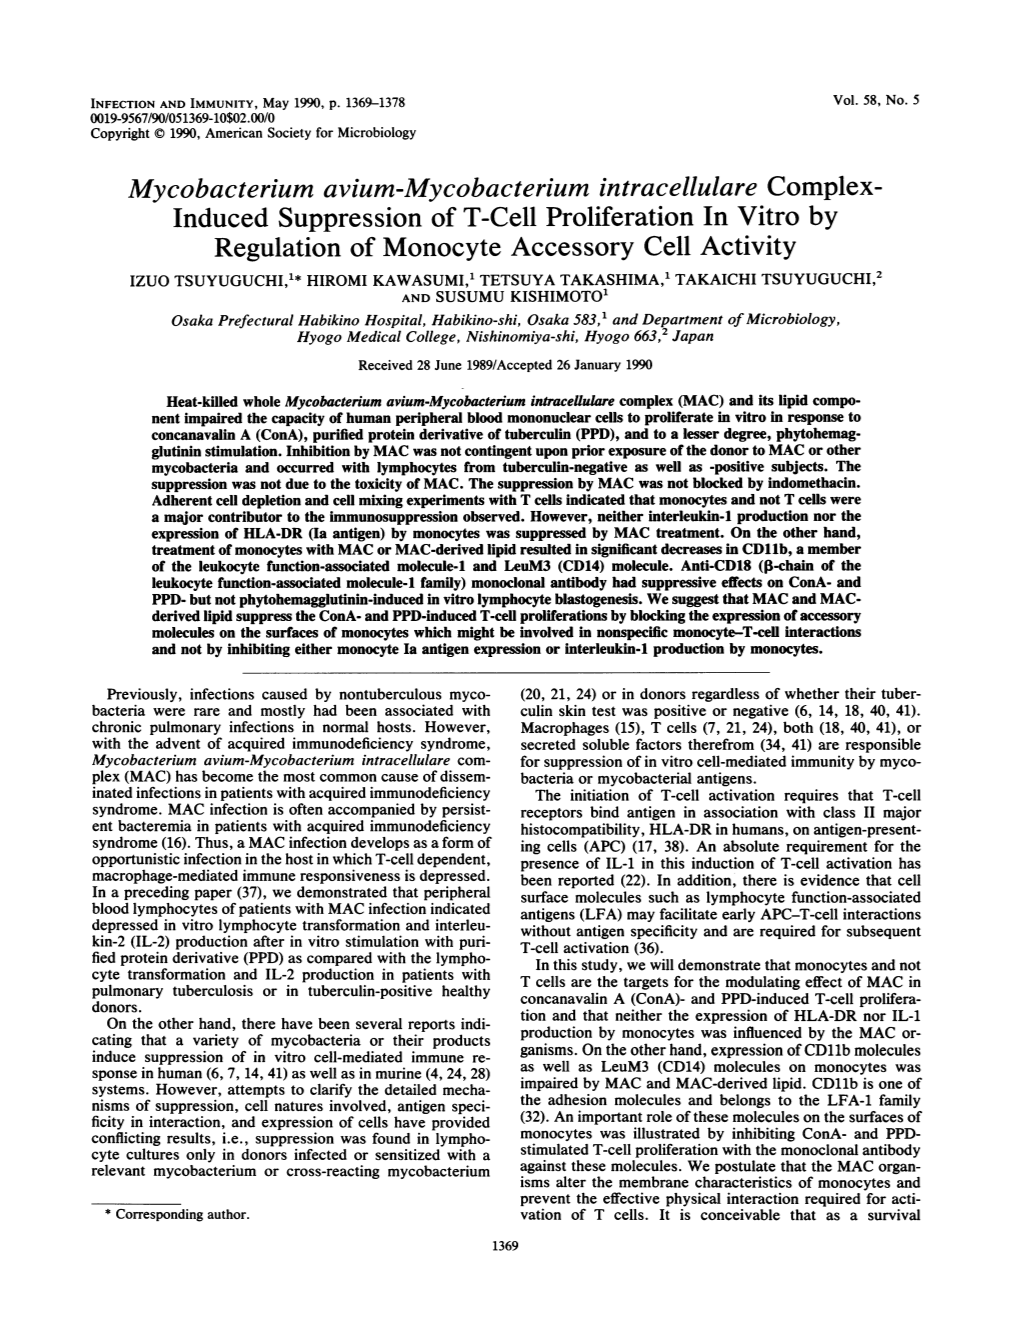 Mycobacterium Avium-Mycobacterium Intracellulare Complex